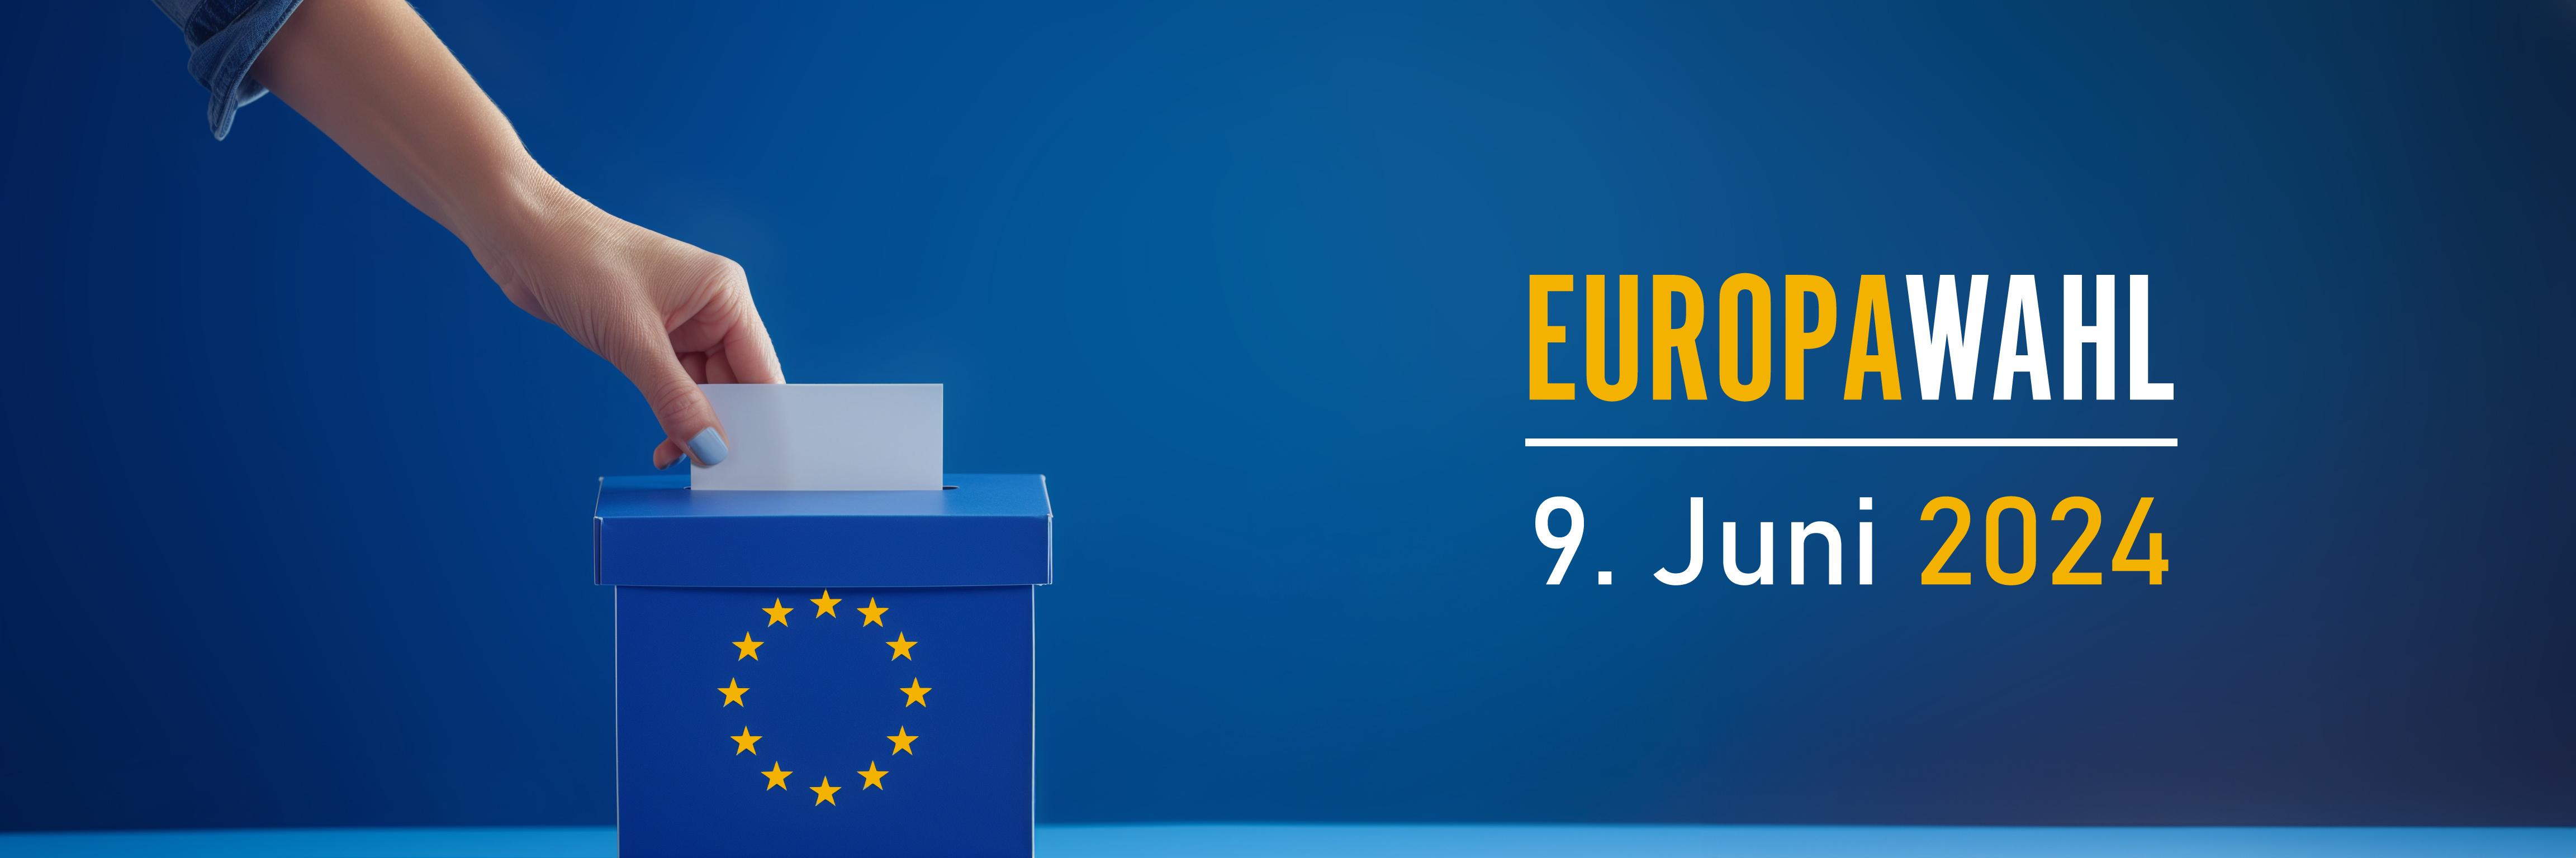 Das Symbolbild zur Europawahl zeigt links eine Hand, die eine einen Zettel in eine blaue Box steckt, rechts davon die Headline 